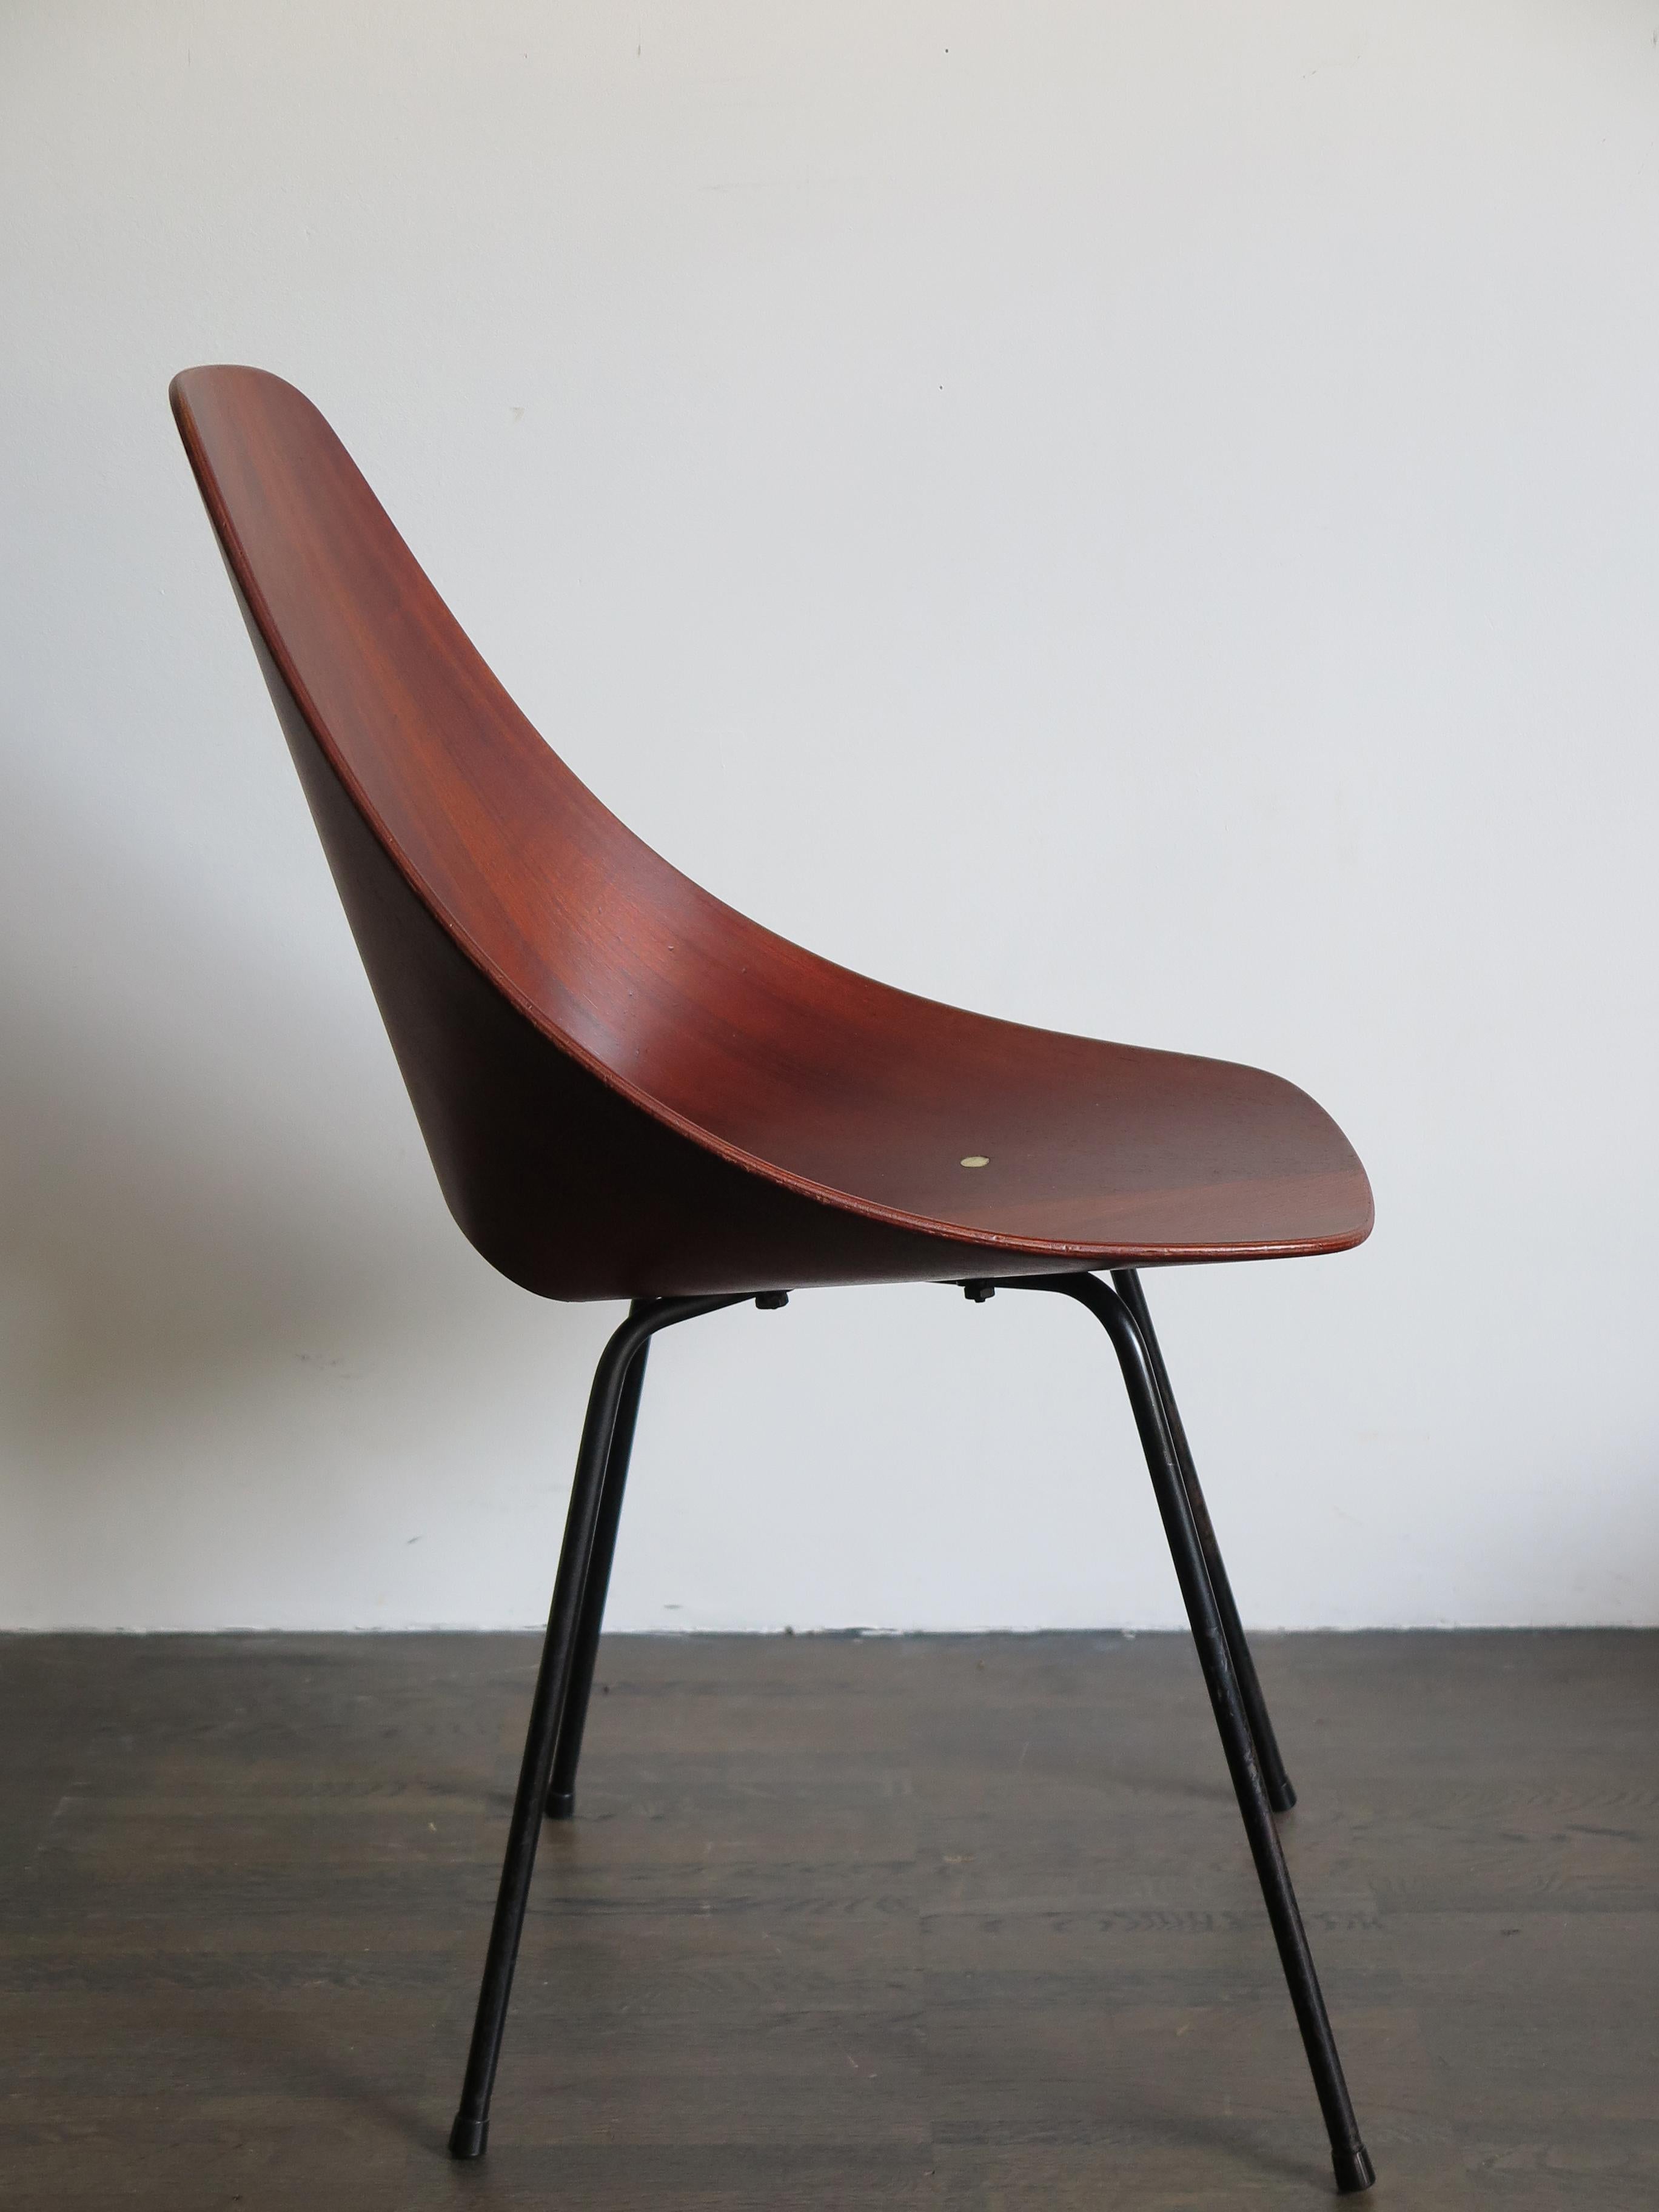 Vittorio Nobili Italian Wood Chairs Model Medea for Fratelli Tagliabue, 1950s For Sale 1